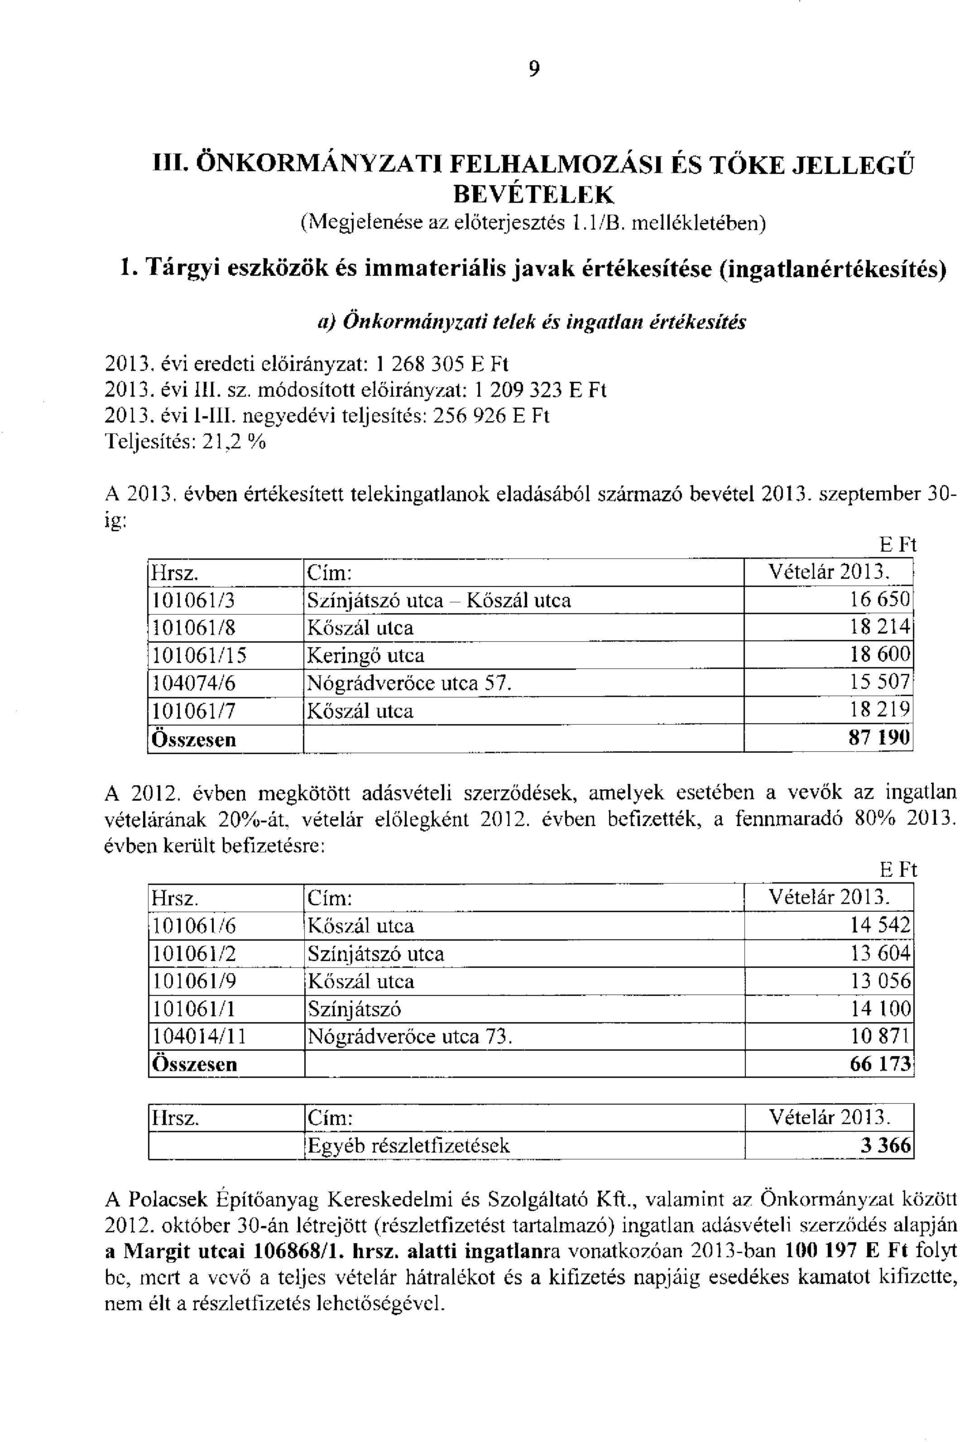 módosított : 1 209 323 E Ft 2013. évi I-III. negyedévi teljesítés: 256 926 E Ft Teljesítés: 21,2 % A 2013. évben értékesített telekingatlanok eladásából származó bevétel 2013. szeptember 30- ig: Hrsz.